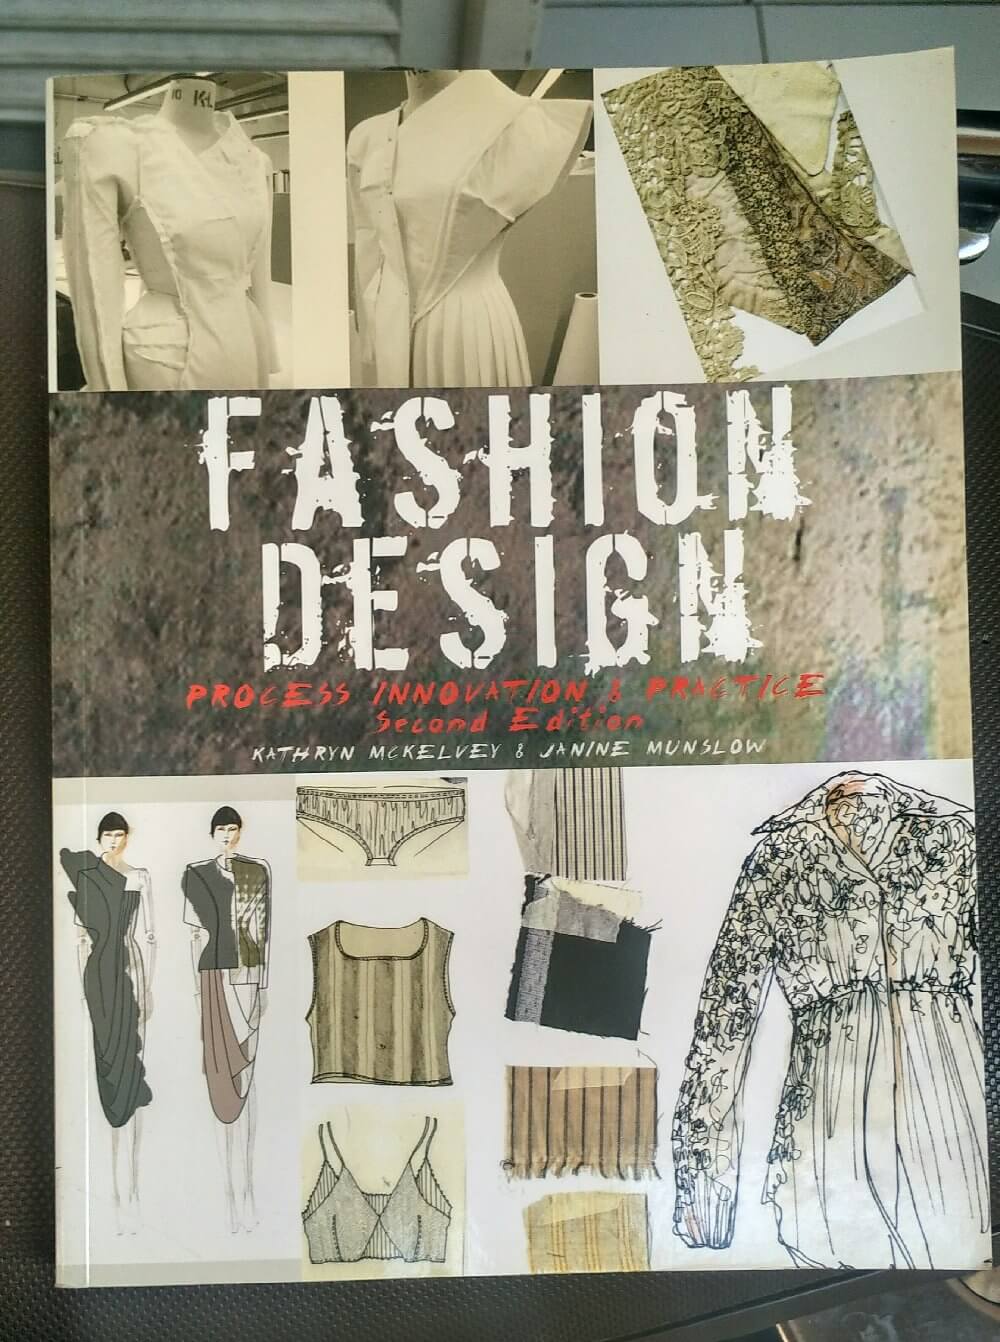 research fashion design